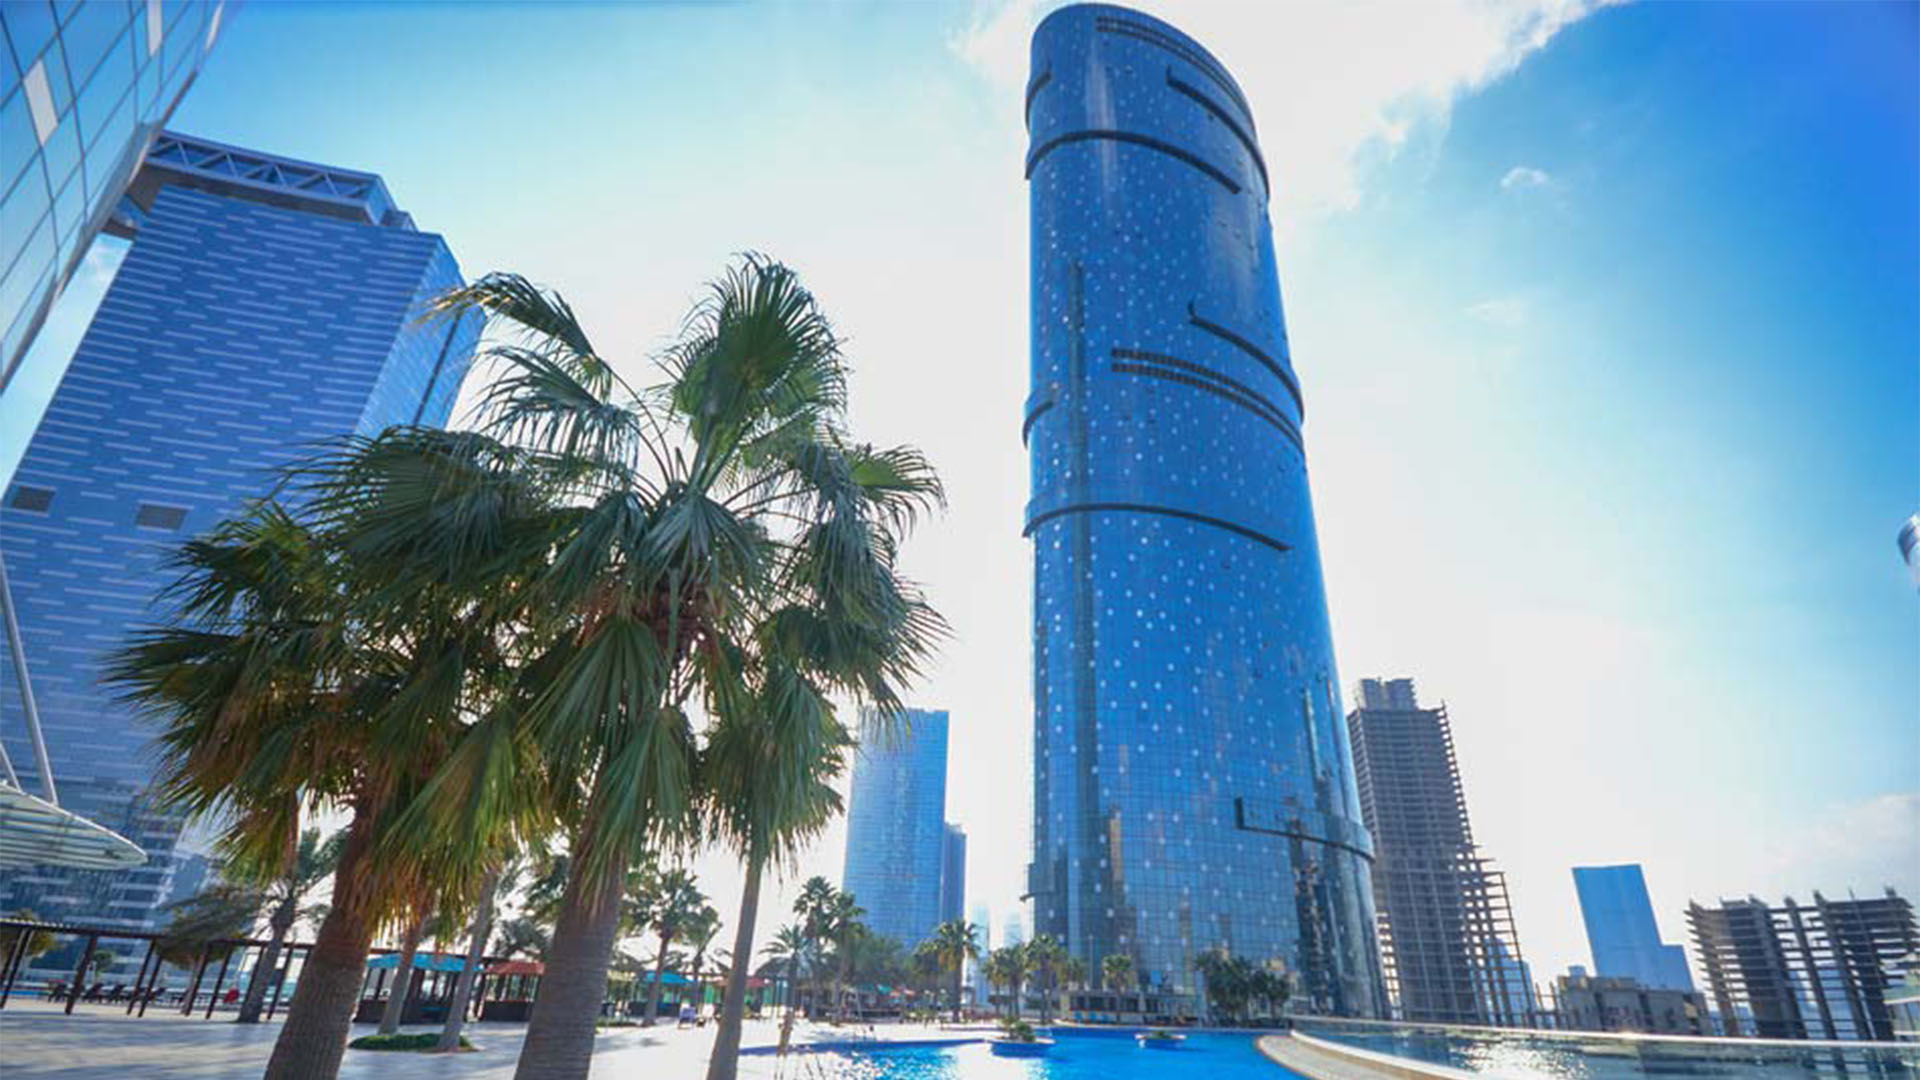 SUN AND SKY TOWERS by Aldar Properties in Al Reem Island, Abu Dhabi, UAE